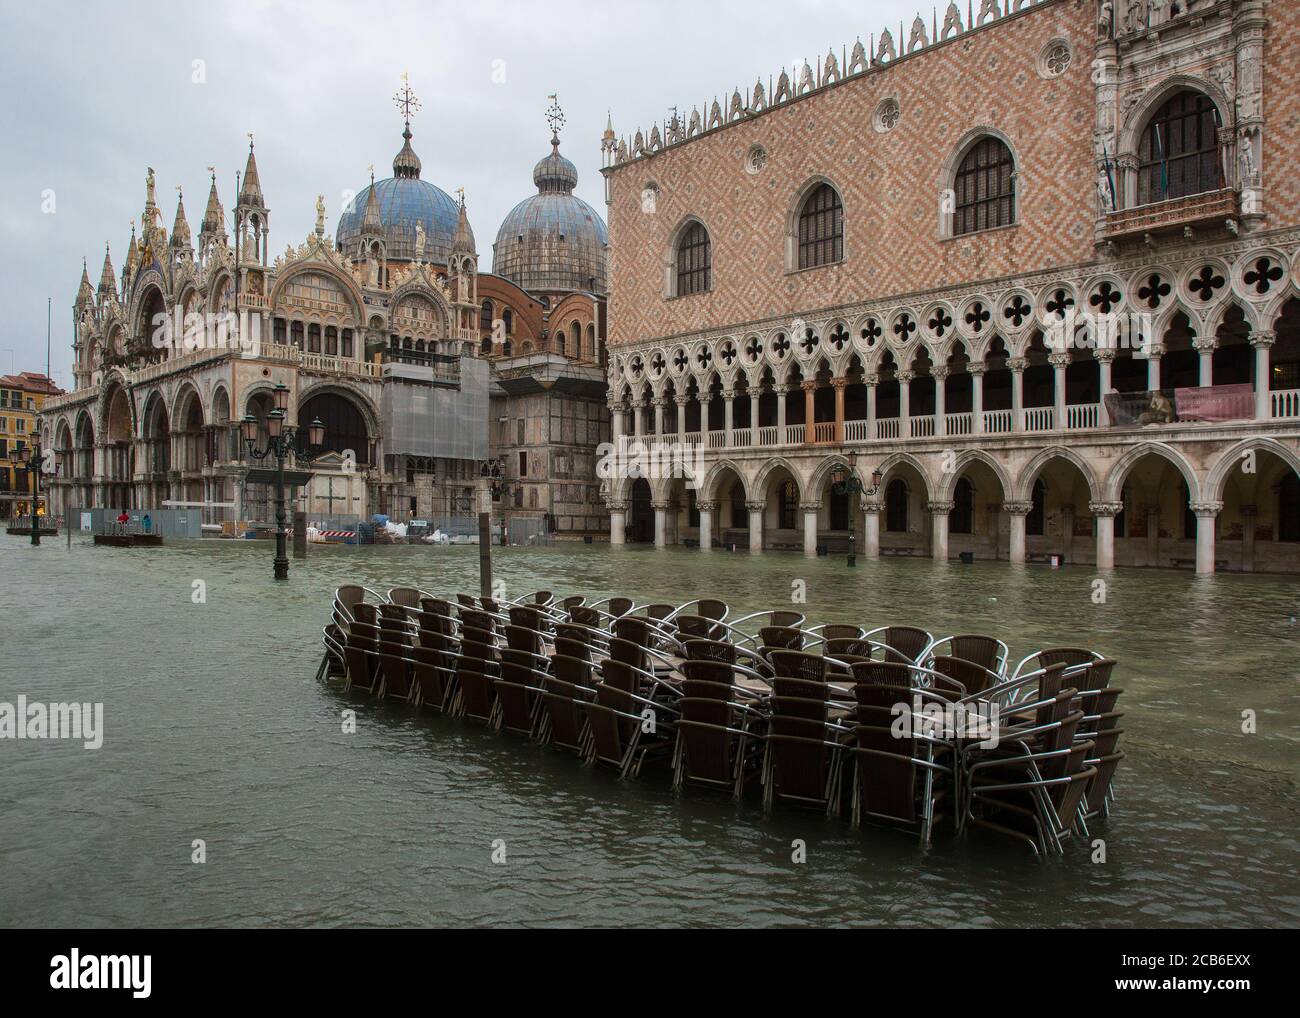 Venedig, Markusplatz, Piazzetta, Blick von Süden auf Dogenpalast und Markusdom bei Hochwasser Stock Photo